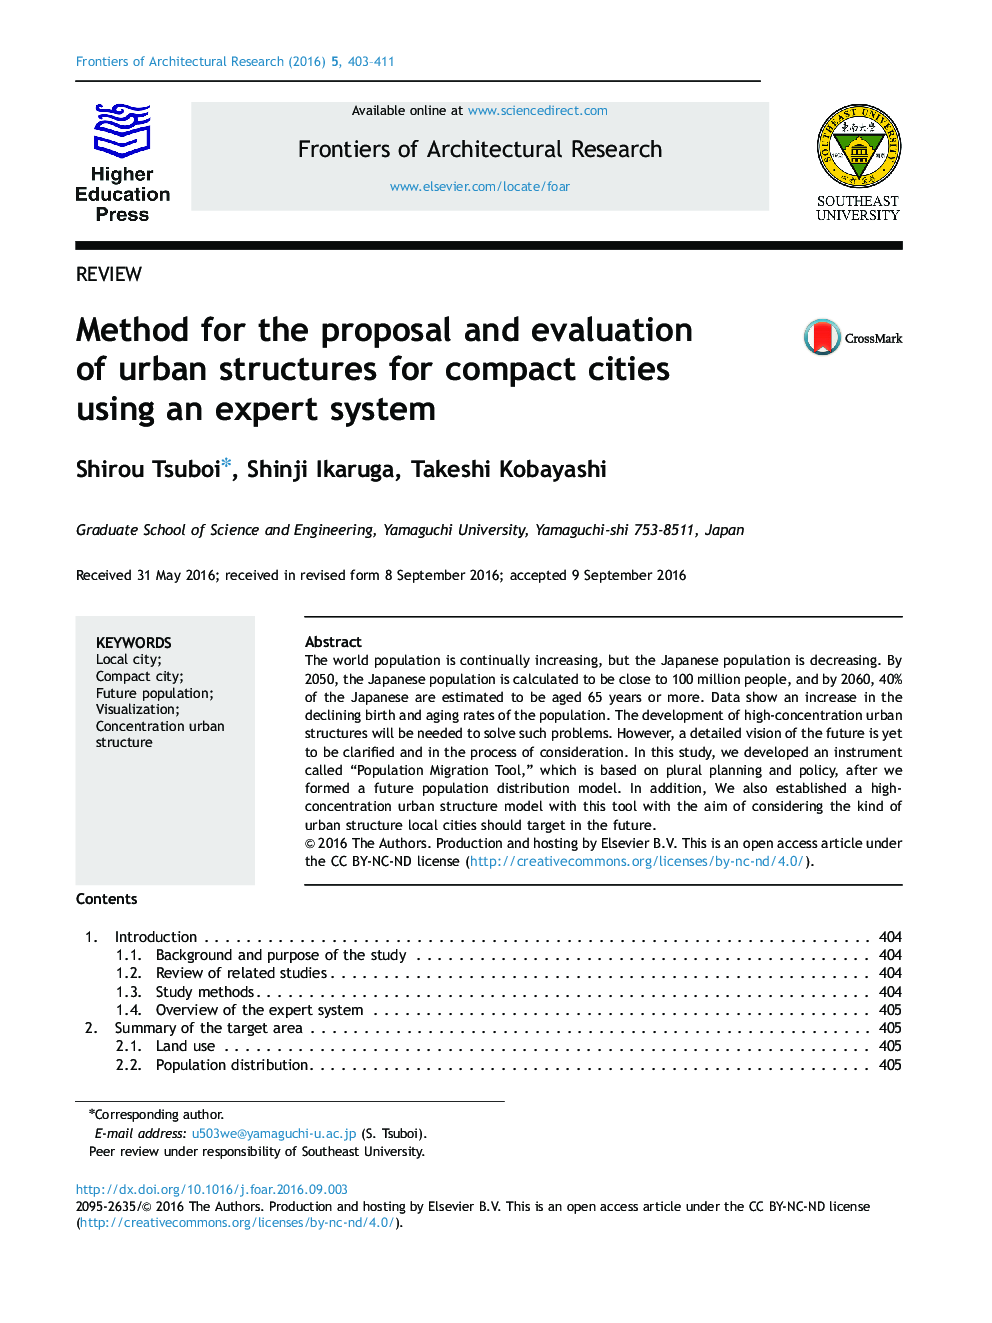 روش پیشنهاد و ارزیابی ساختارهای شهری برای شهرهای جمع و جور با استفاده از سیستم متخصص 